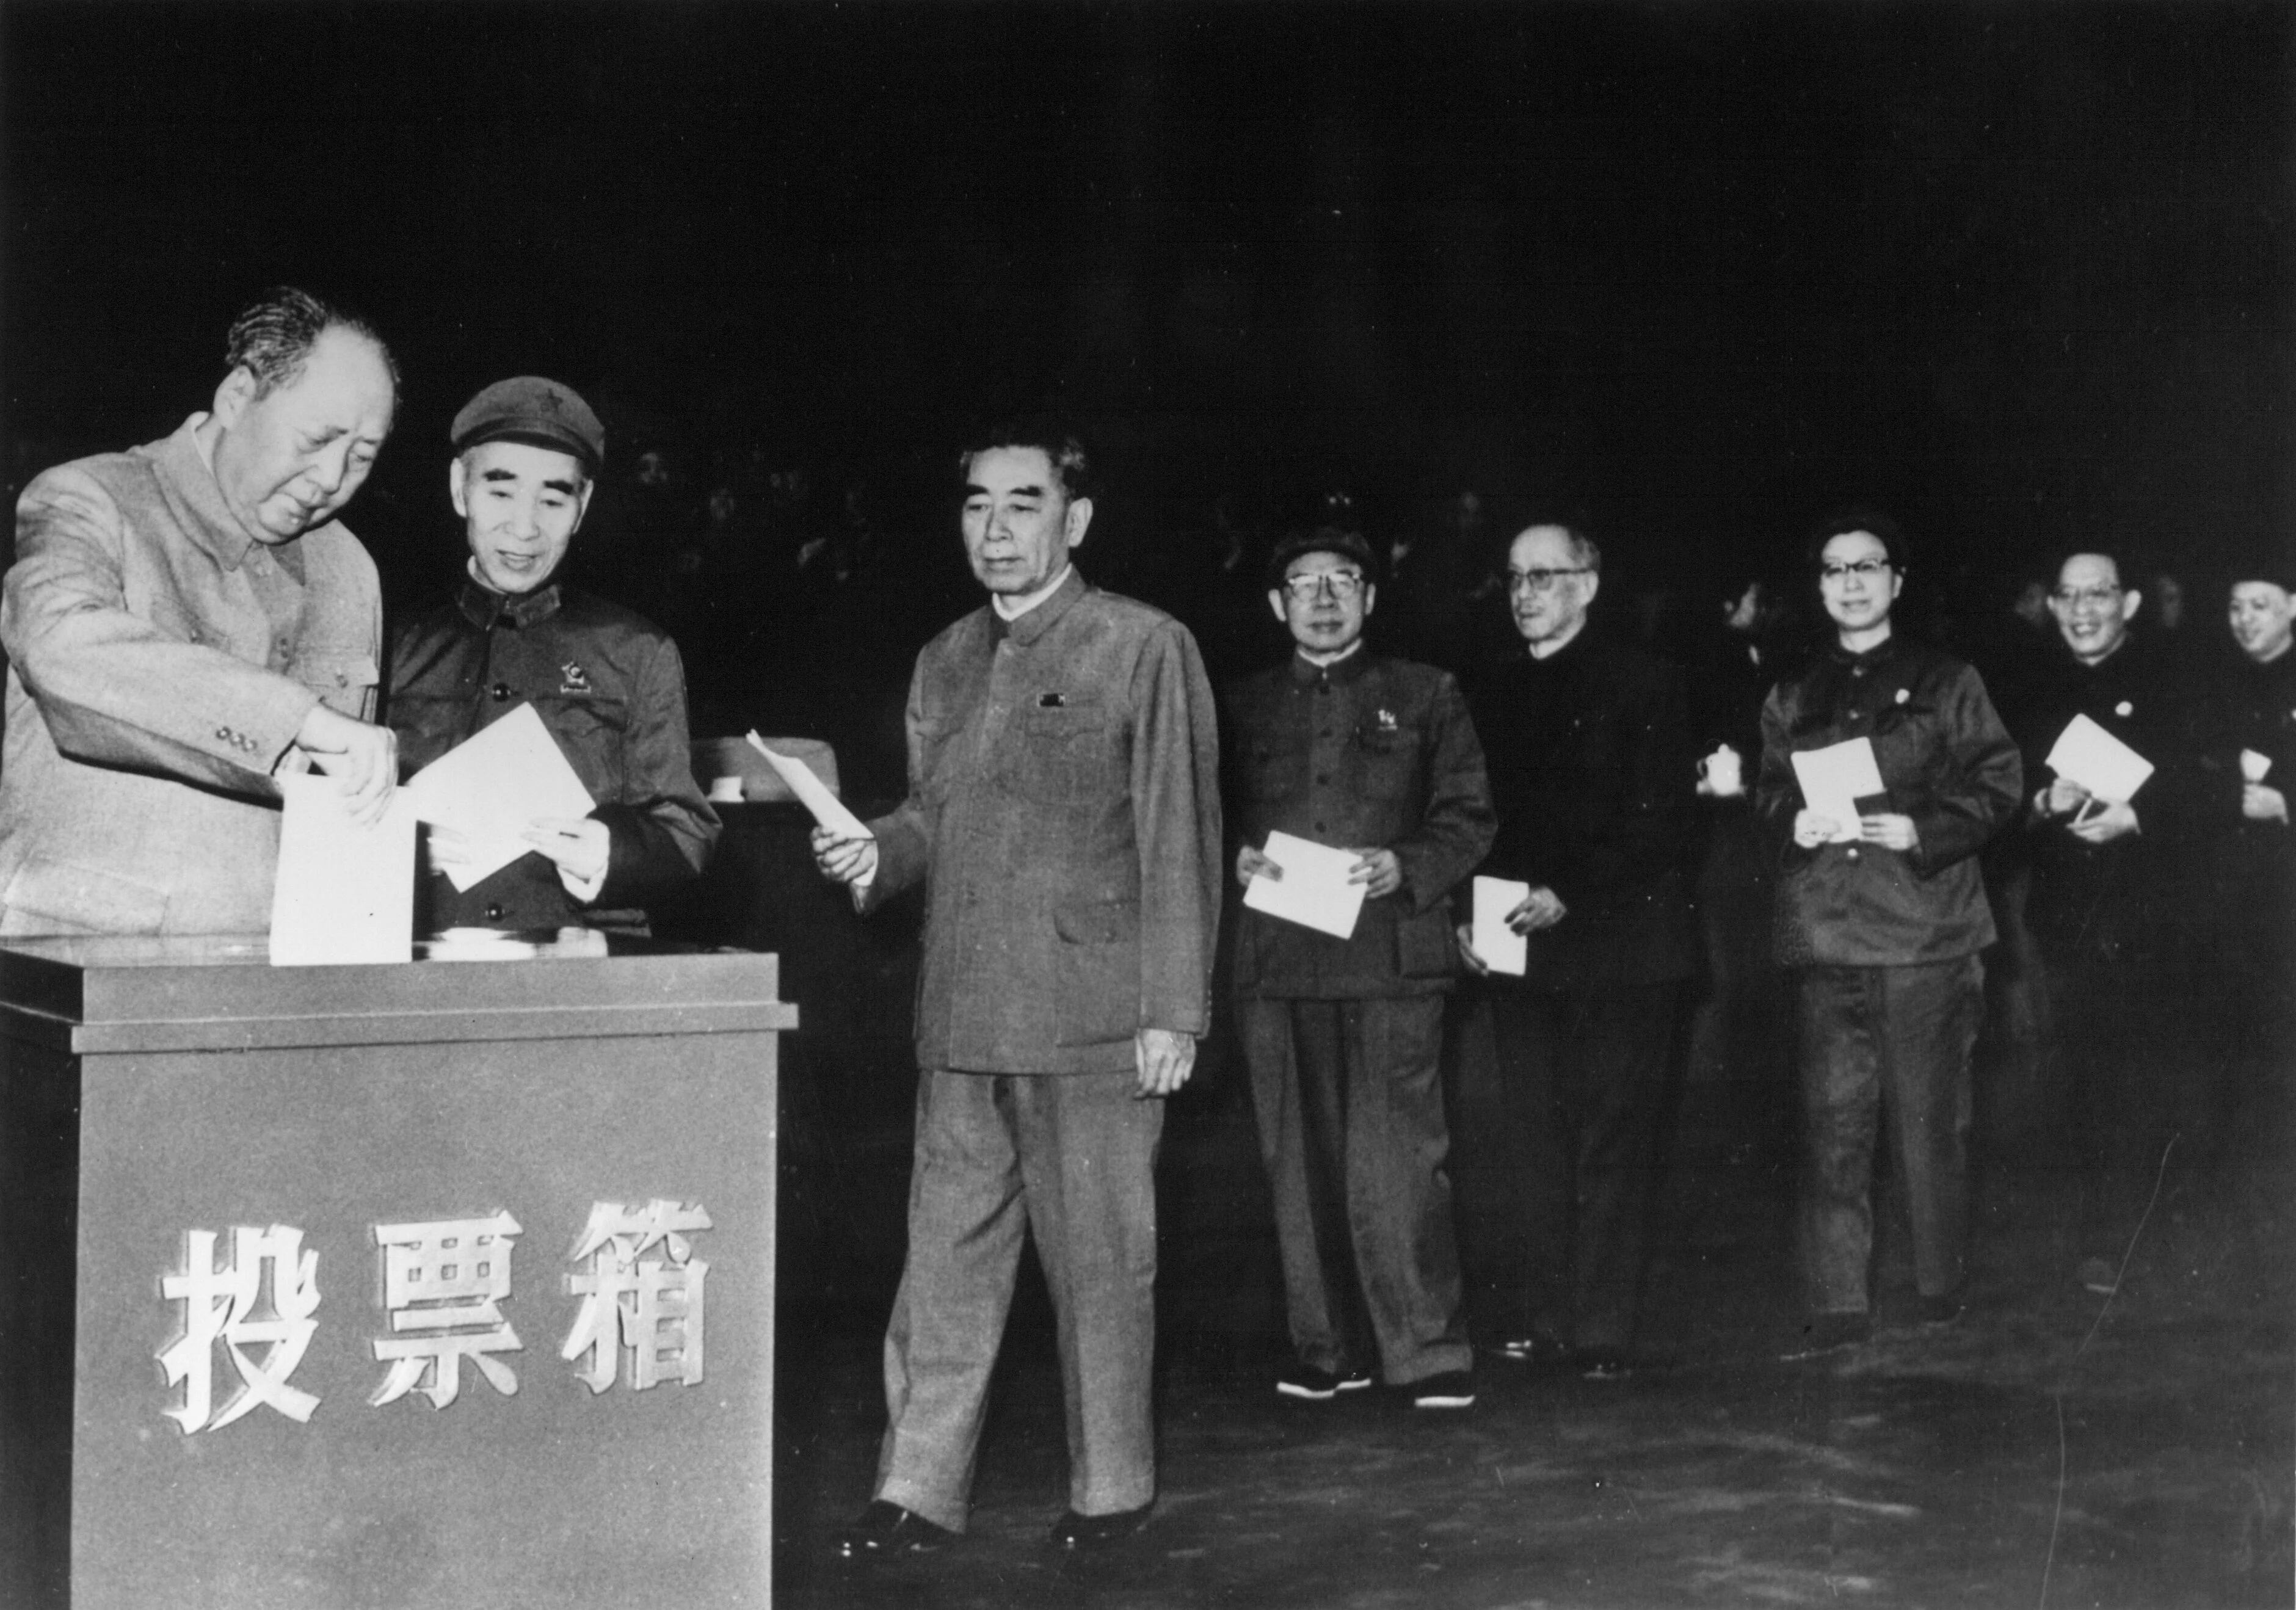 29 de abril de 1969:  A la izquierda, el presidente Mao Zedong (1893 - 1976) deposita su voto en el noveno congreso nacional comunista de China en Pekín. Esperando para depositar su voto en orden jerárquico, desde la 2ª izquierda, Lin Piao, Chou En-Lai, Chen Po_Tak, Kang Sheng, Chiang Ching (esposa de Mao), Chang Chun-Chiao y Yao Wen-Yuan (Foto Getty Images)